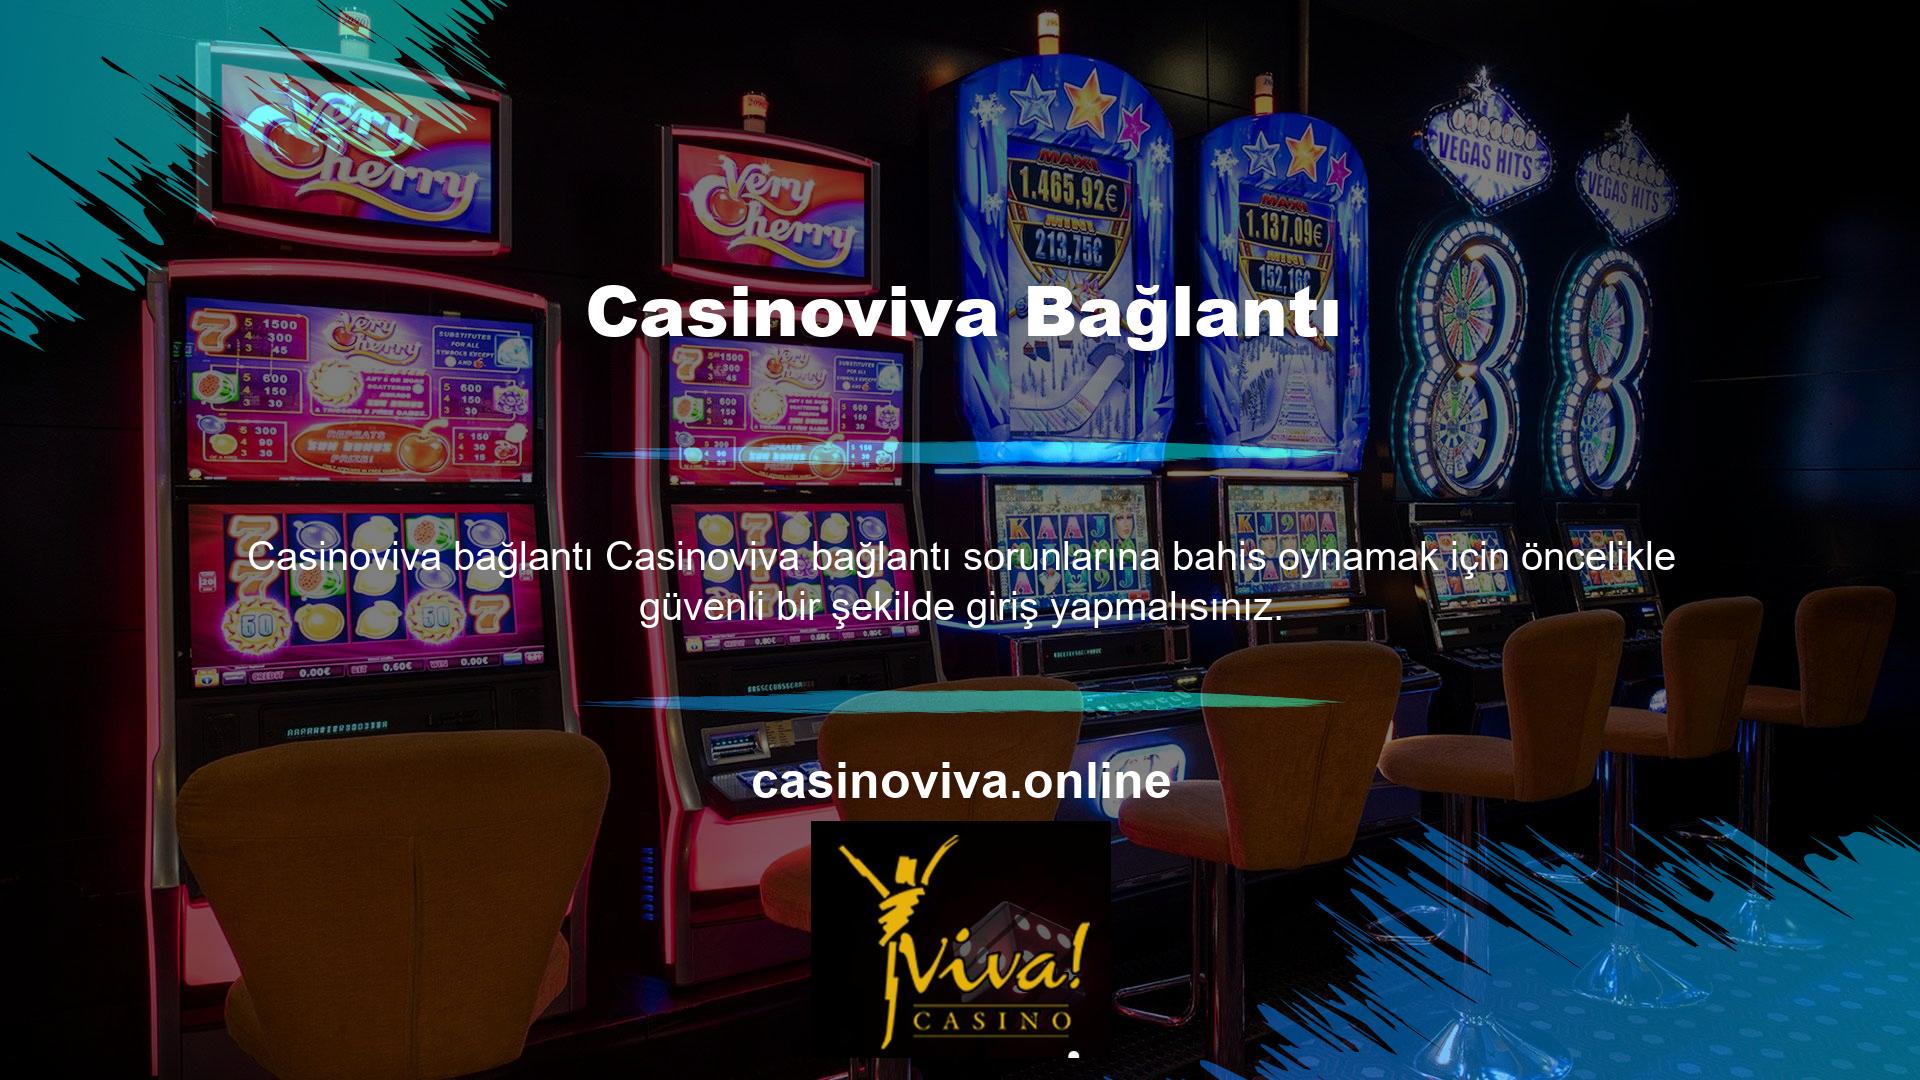 Casinoviva üzerinden erişilen bir siteye erişim sağlayamıyorsanız bilmeniz gereken tek şey sitenin yeni bir adrese taşınmış olmasıdır